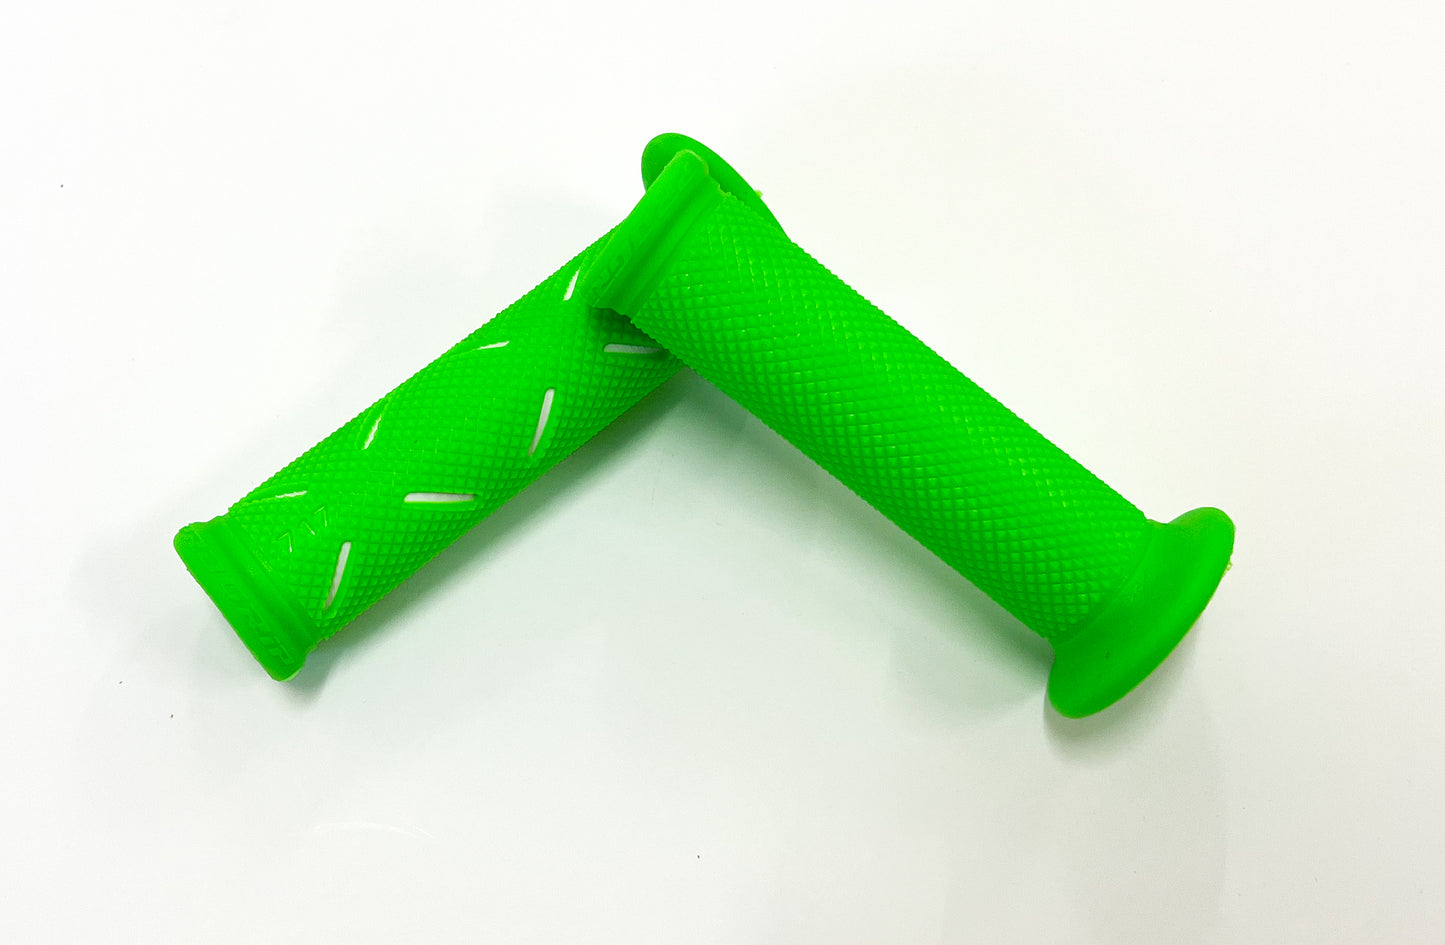 Progrip Fluoro Green Dual Density 717 Open Grips